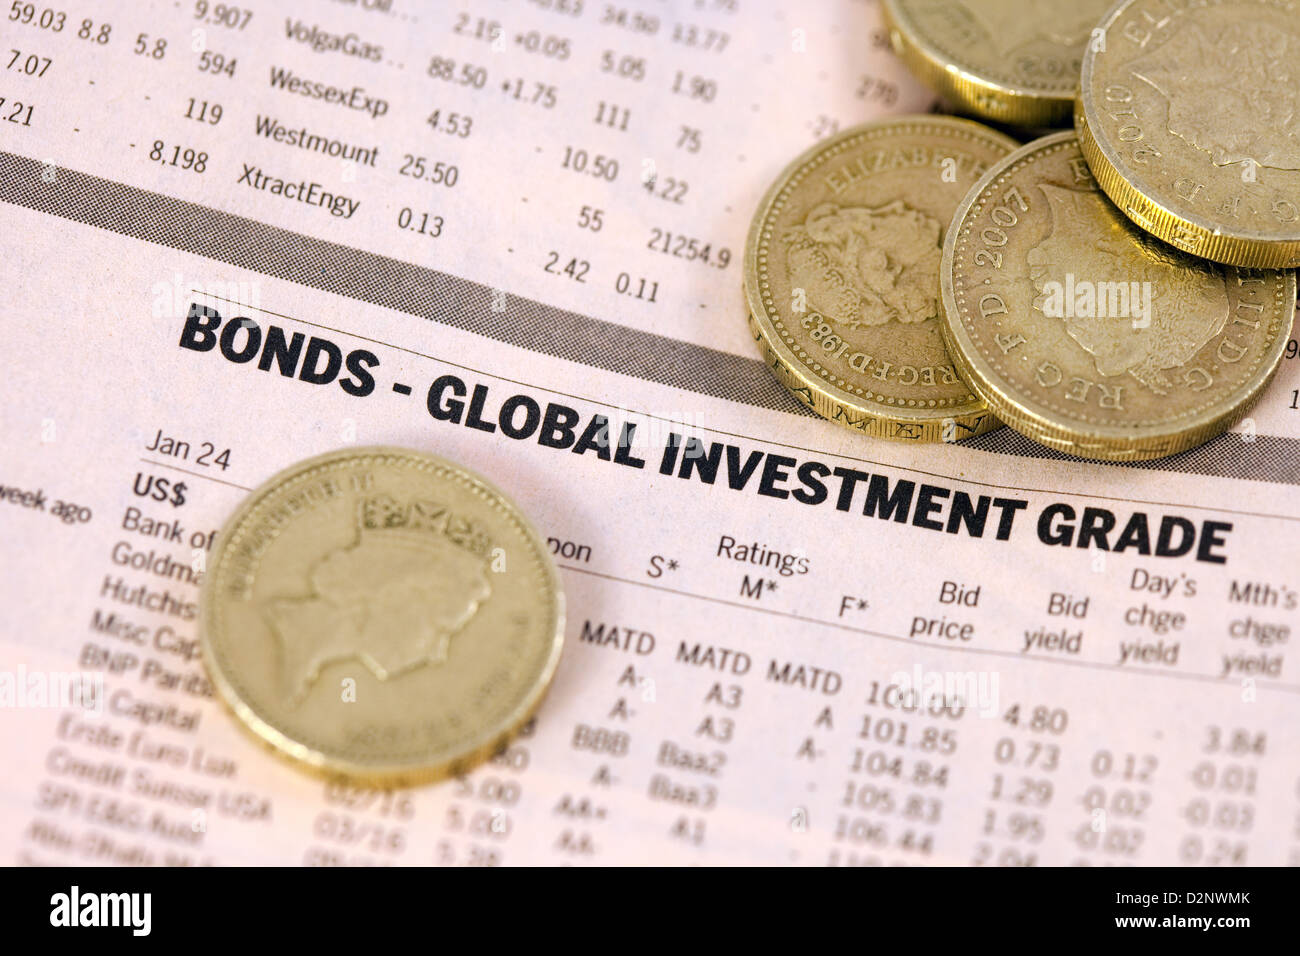 Obbligazioni - Global Investment Grade - elenco nel Financial Times, Regno Unito Foto Stock